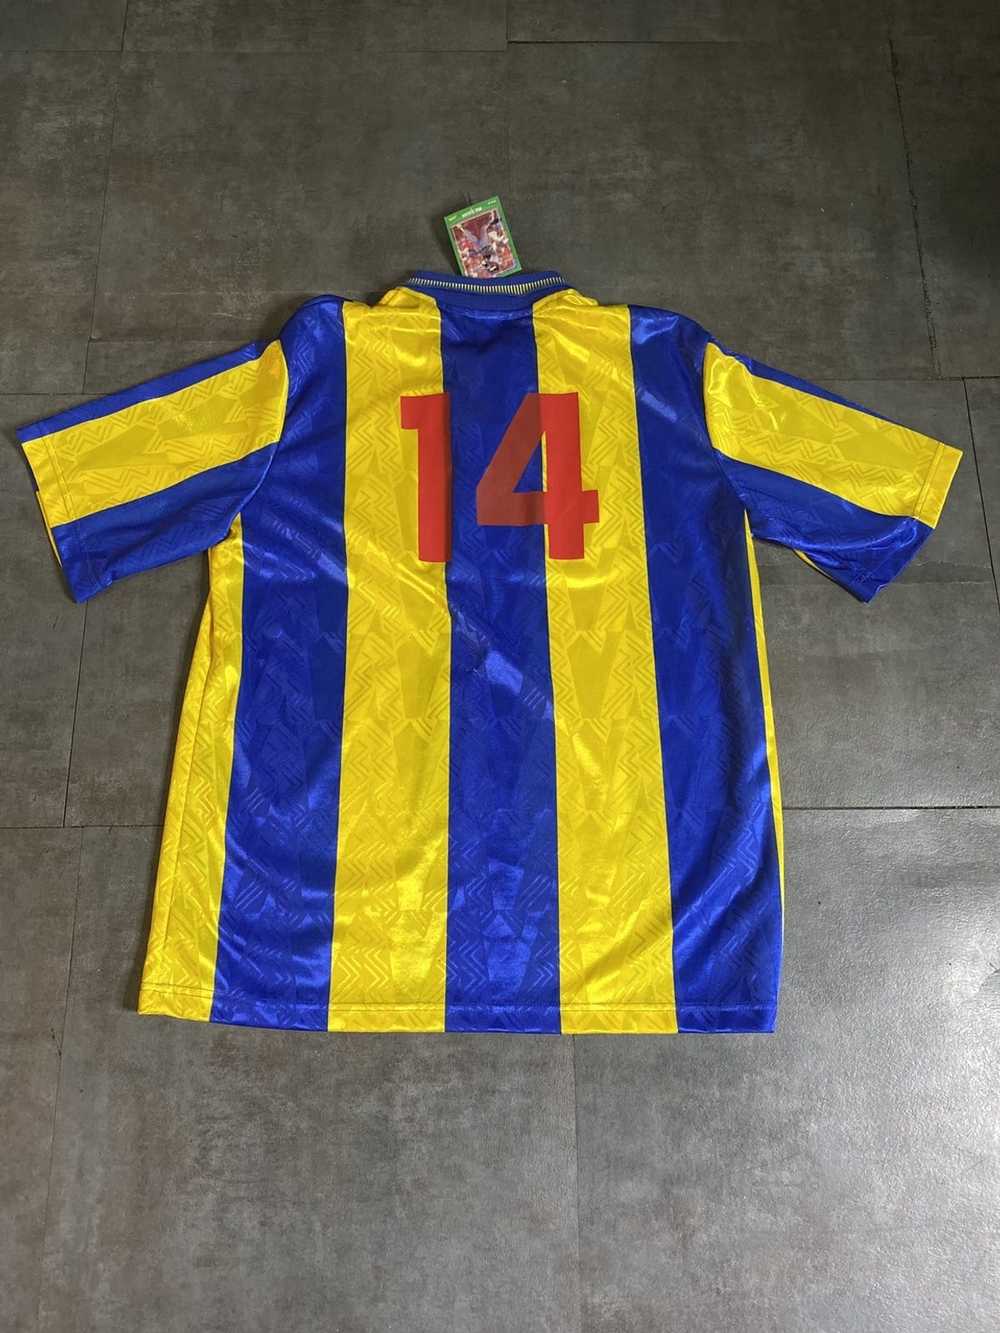 Umbro × Vintage Vintage 90's Umbro soccer jersey. - Gem